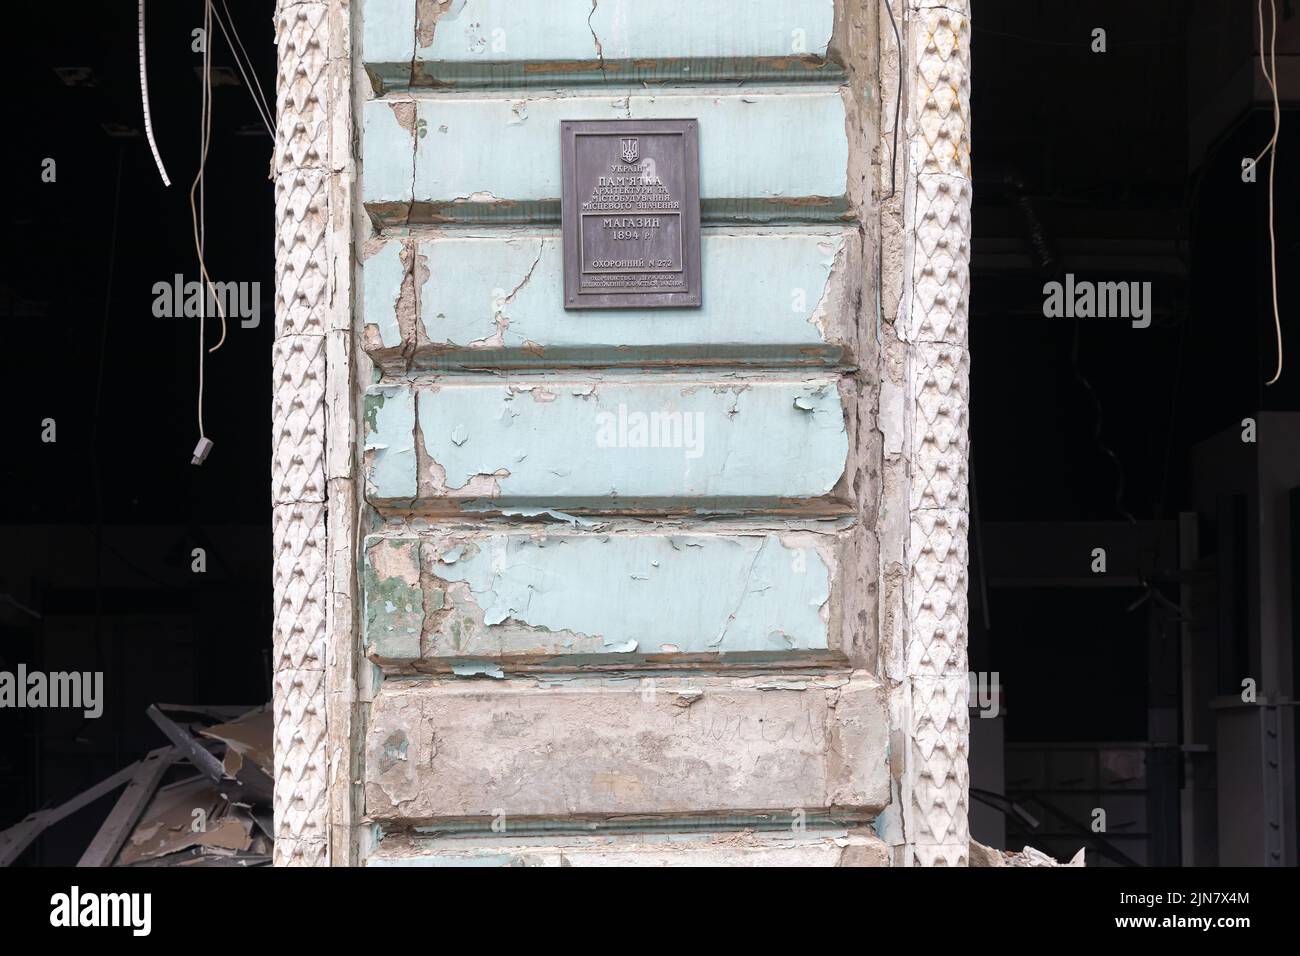 Monument architectural endommagé de la ville de Kharkiv en raison des bombardements russes. Une plaque commémorative sur la valeur architecturale de l'édifice est visible sur le mur de l'édifice. L'inscription est un monument de l'architecture et de l'urbanisme d'importance locale. Magasinez en 1894. Banque D'Images